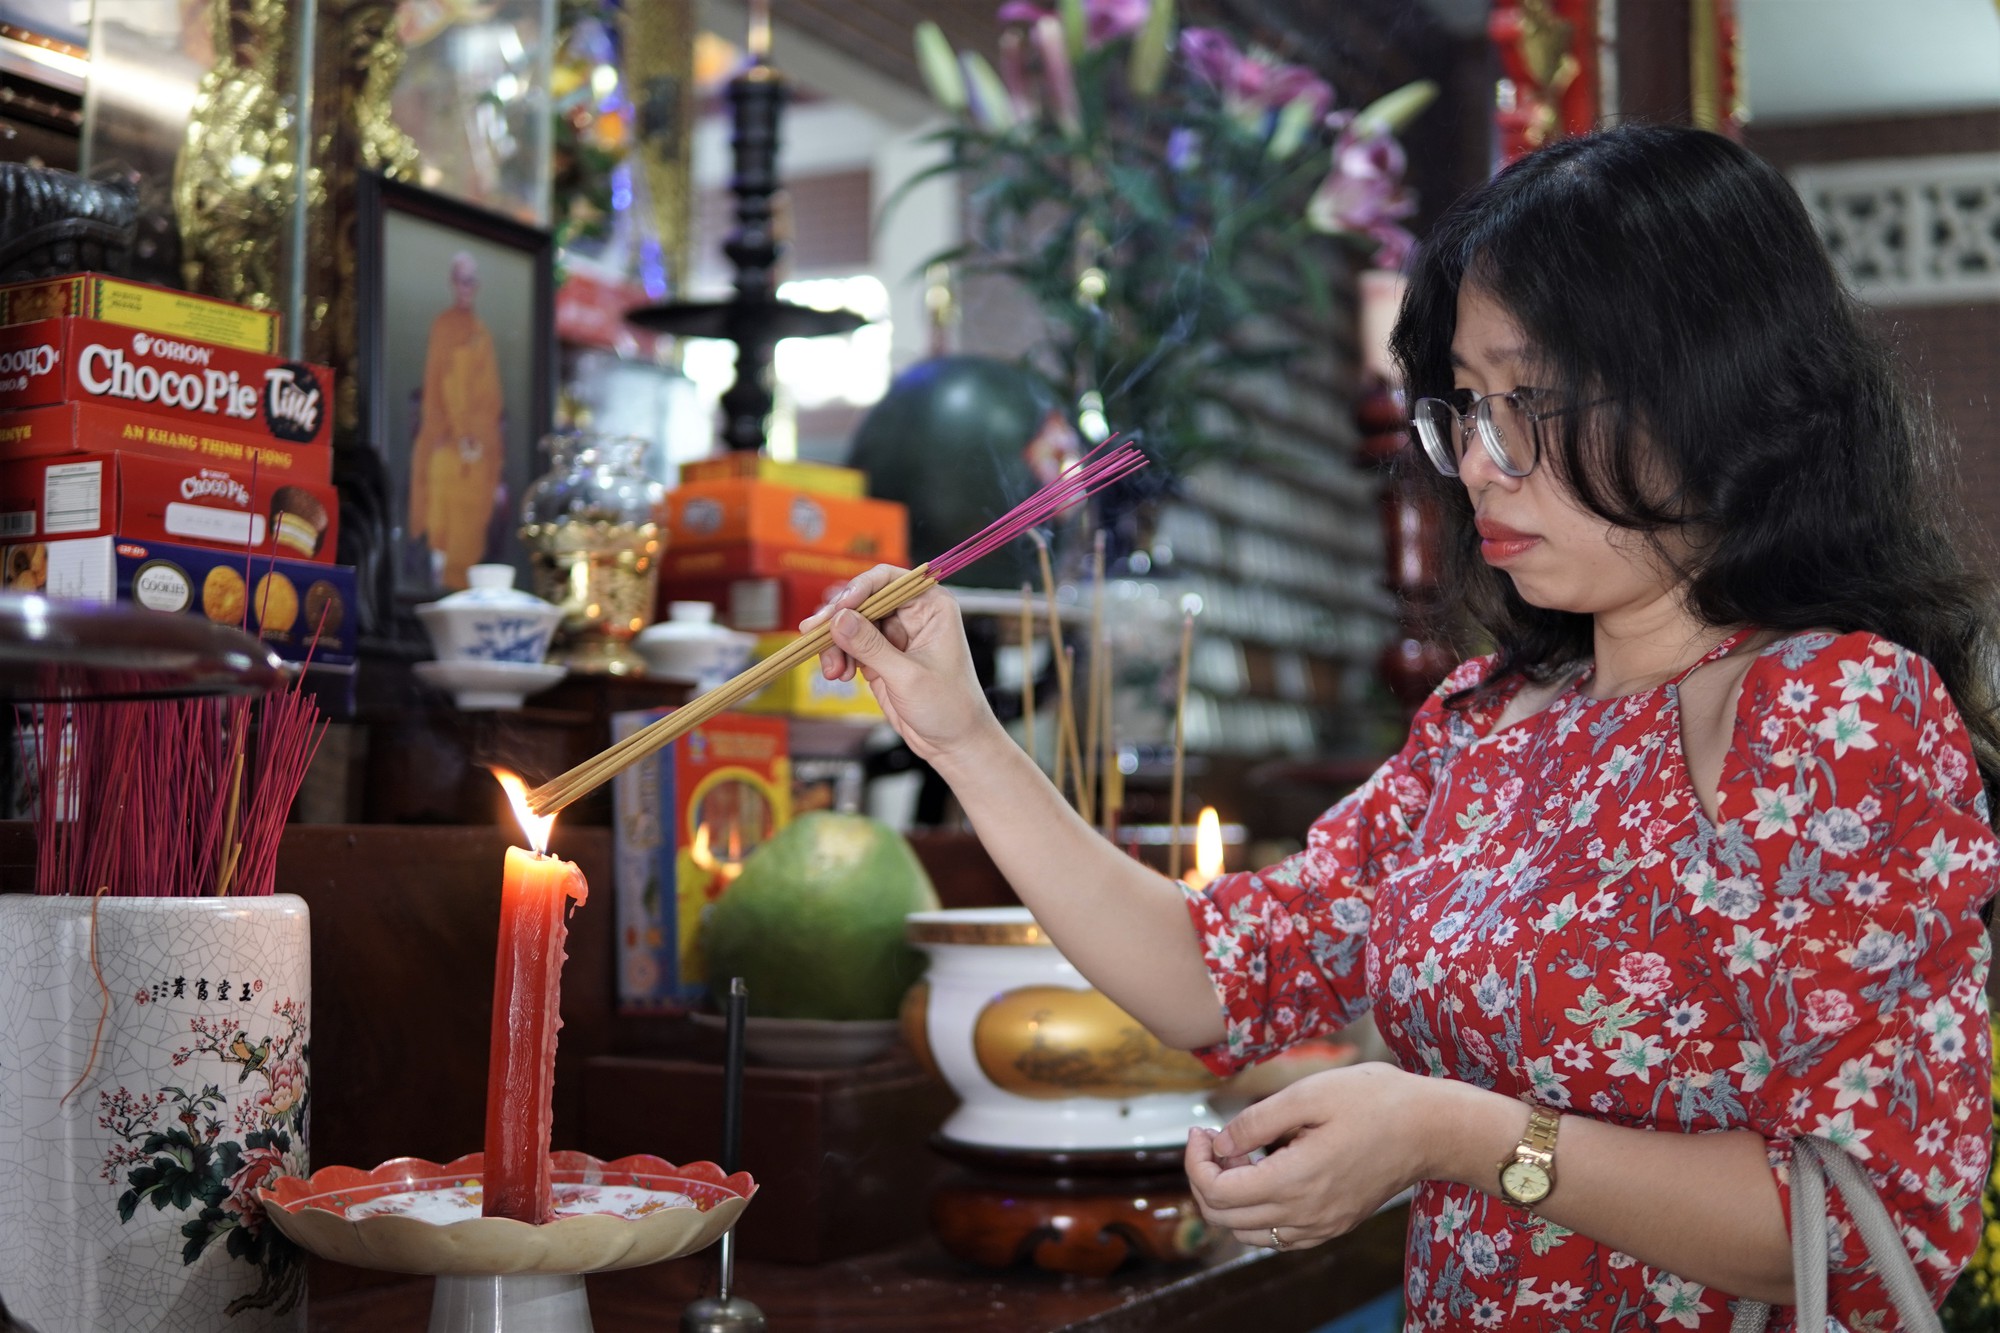 Người dân TP HCM tấp nập đi lễ chùa mùng 1 Tết, cầu năm mới bình an  - Ảnh 2.